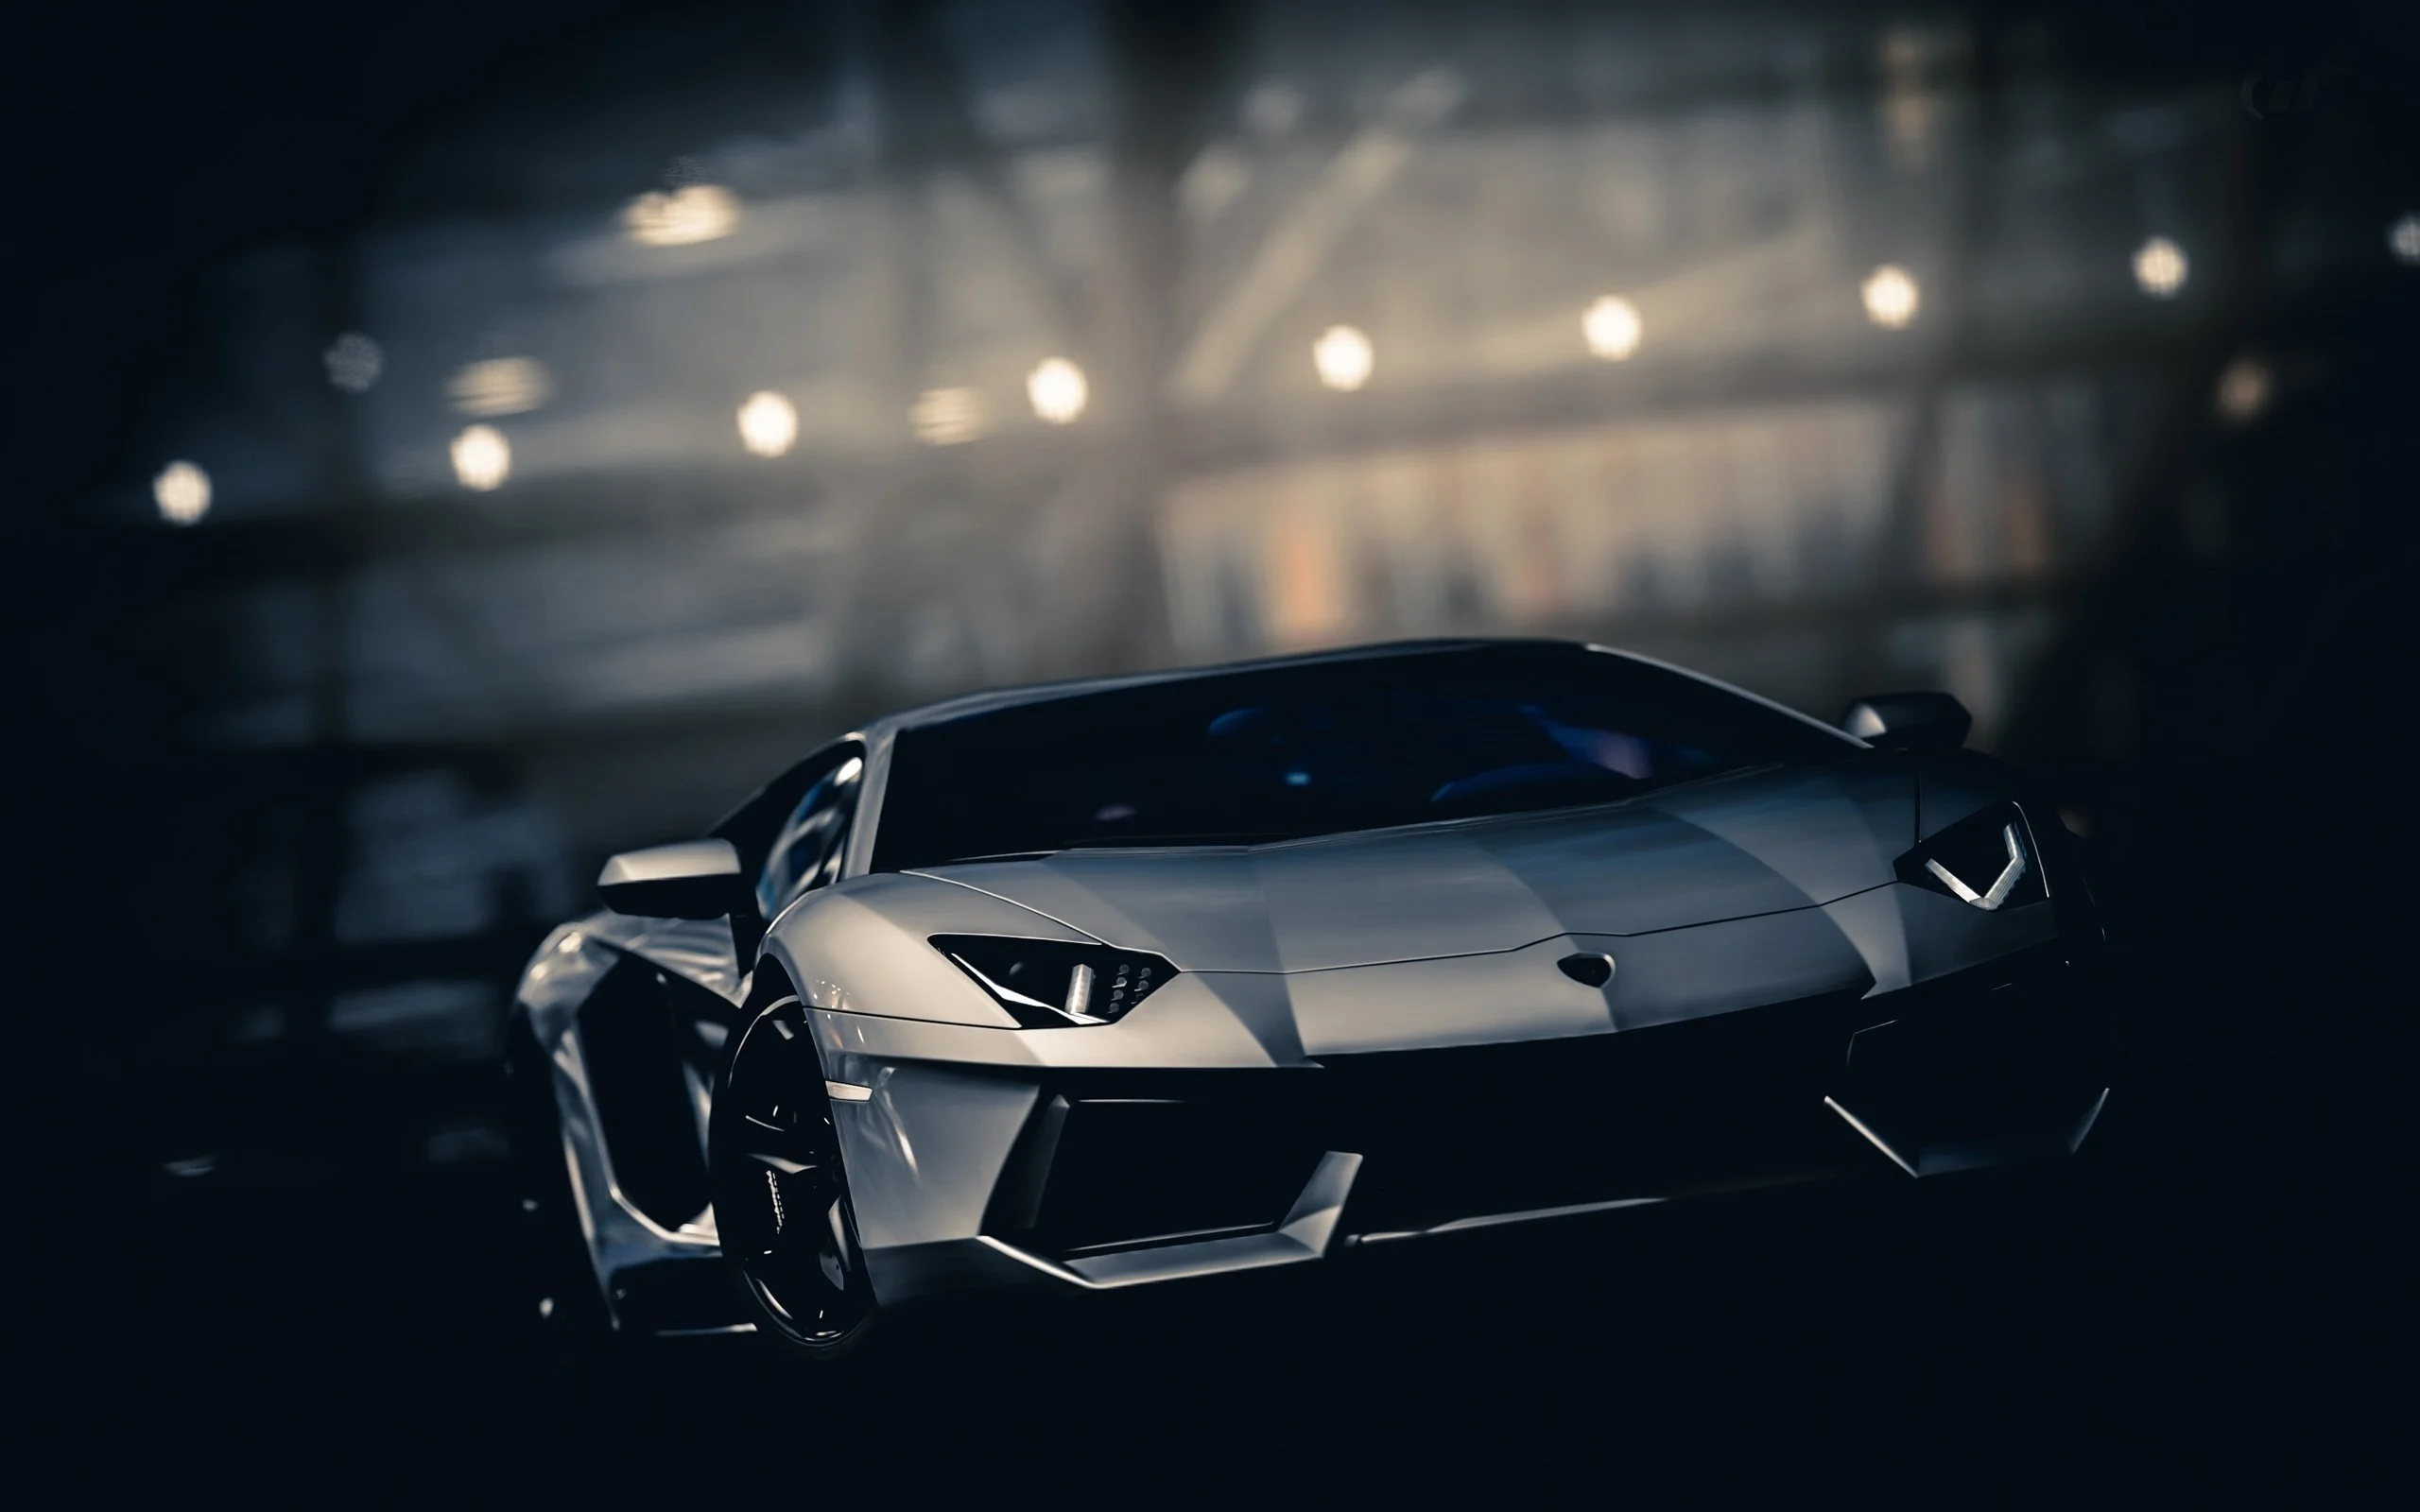 Được trang bị động cơ mạnh mẽ và thiết kế đầy tính thẩm mỹ, Lamborghini là biểu tượng của công nghệ Ý. Xem hình ảnh của những mẫu xe này để thấy sự hoàn hảo và tinh tế của nghệ thuật đúc kết trong hình thức xe hơi.